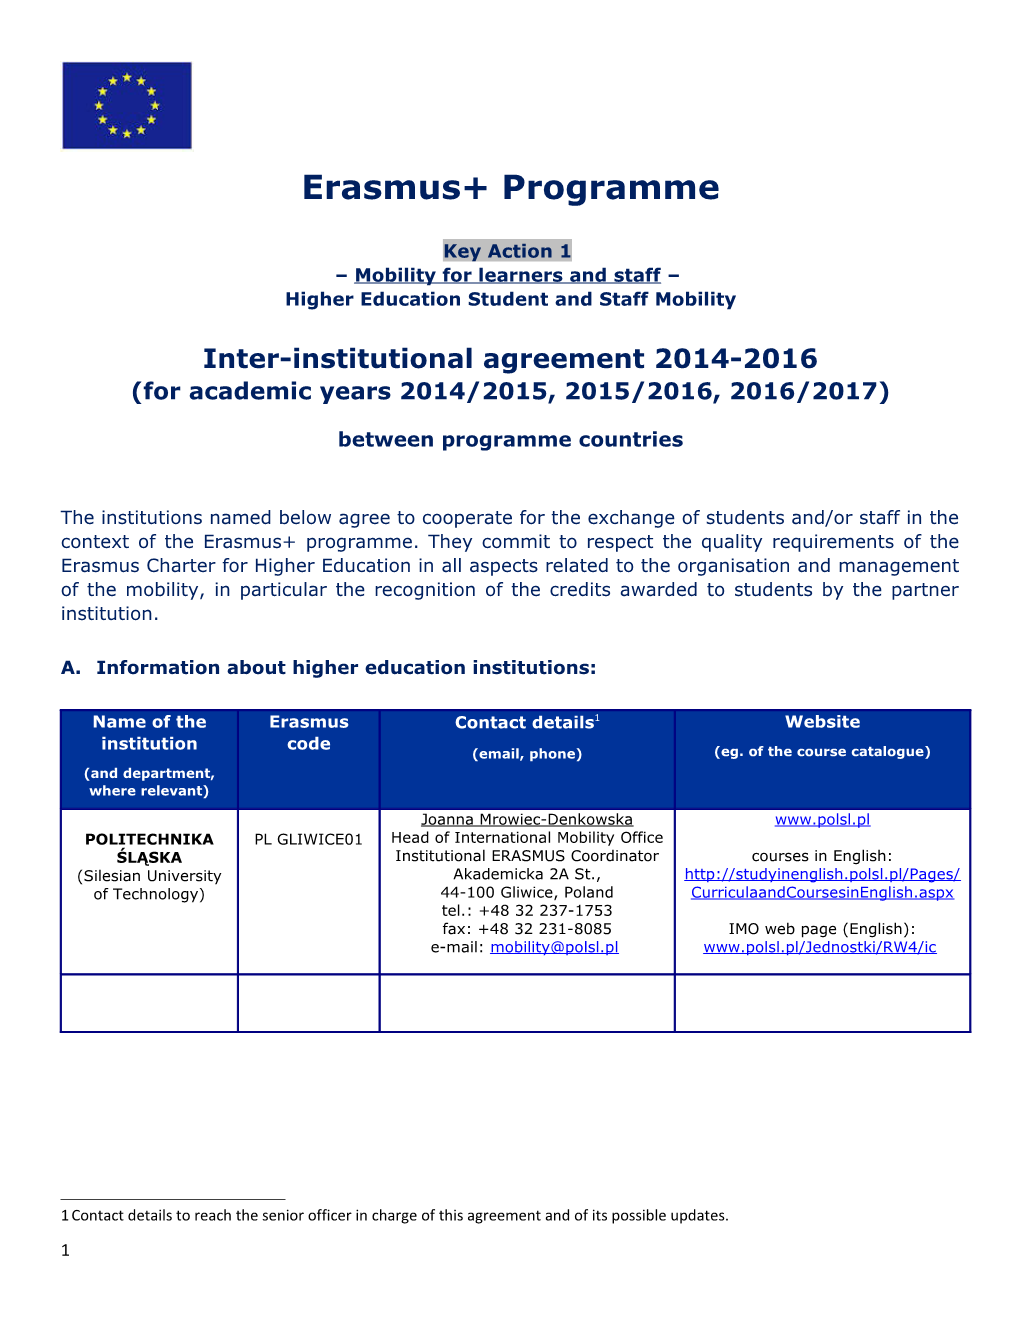 Erasmus+ Programme s10